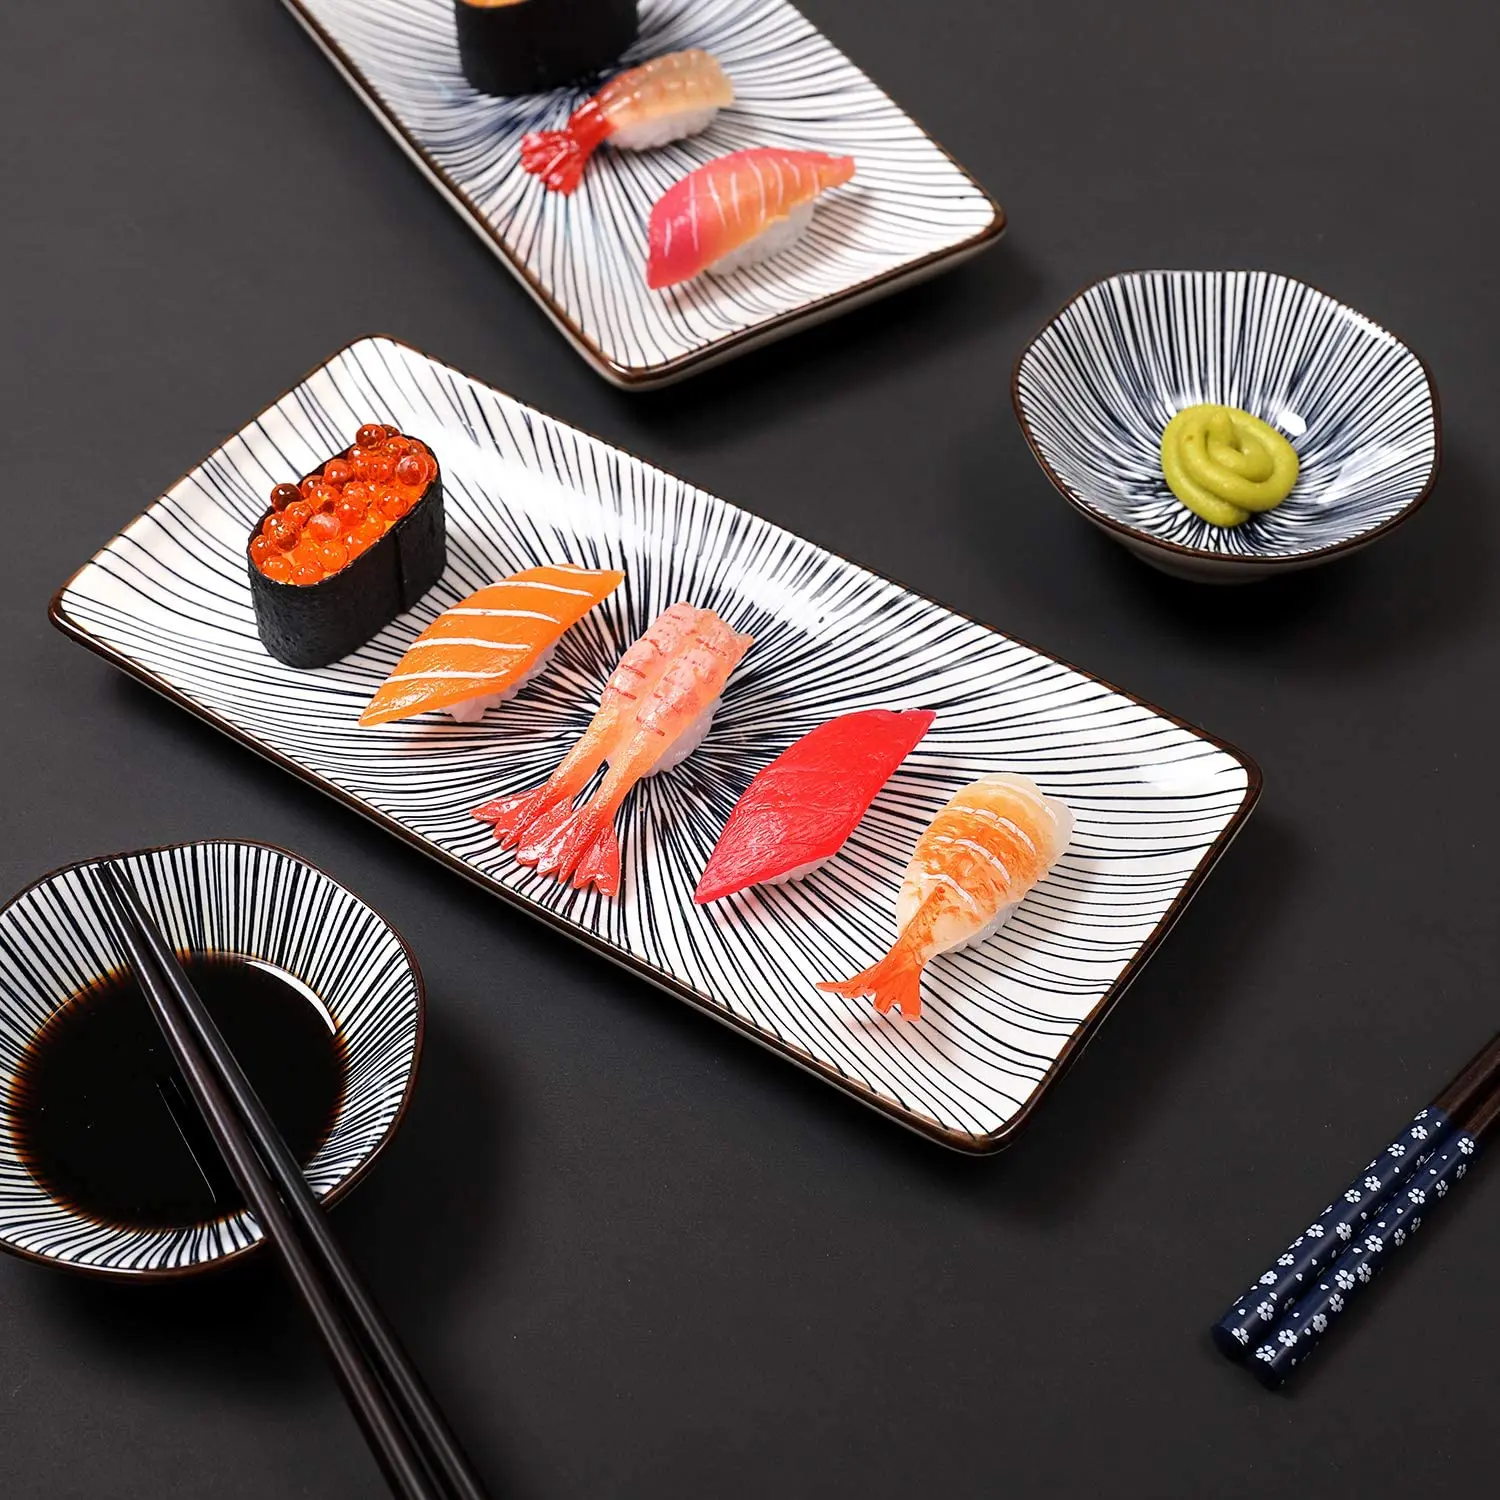 Juego de platos rectangulares de porcelana postre platos rectangulares para sushi 20 x 11 cm juego de 6 pequeños platos de postre de cerámica multicolor aperitivos aperitivos 